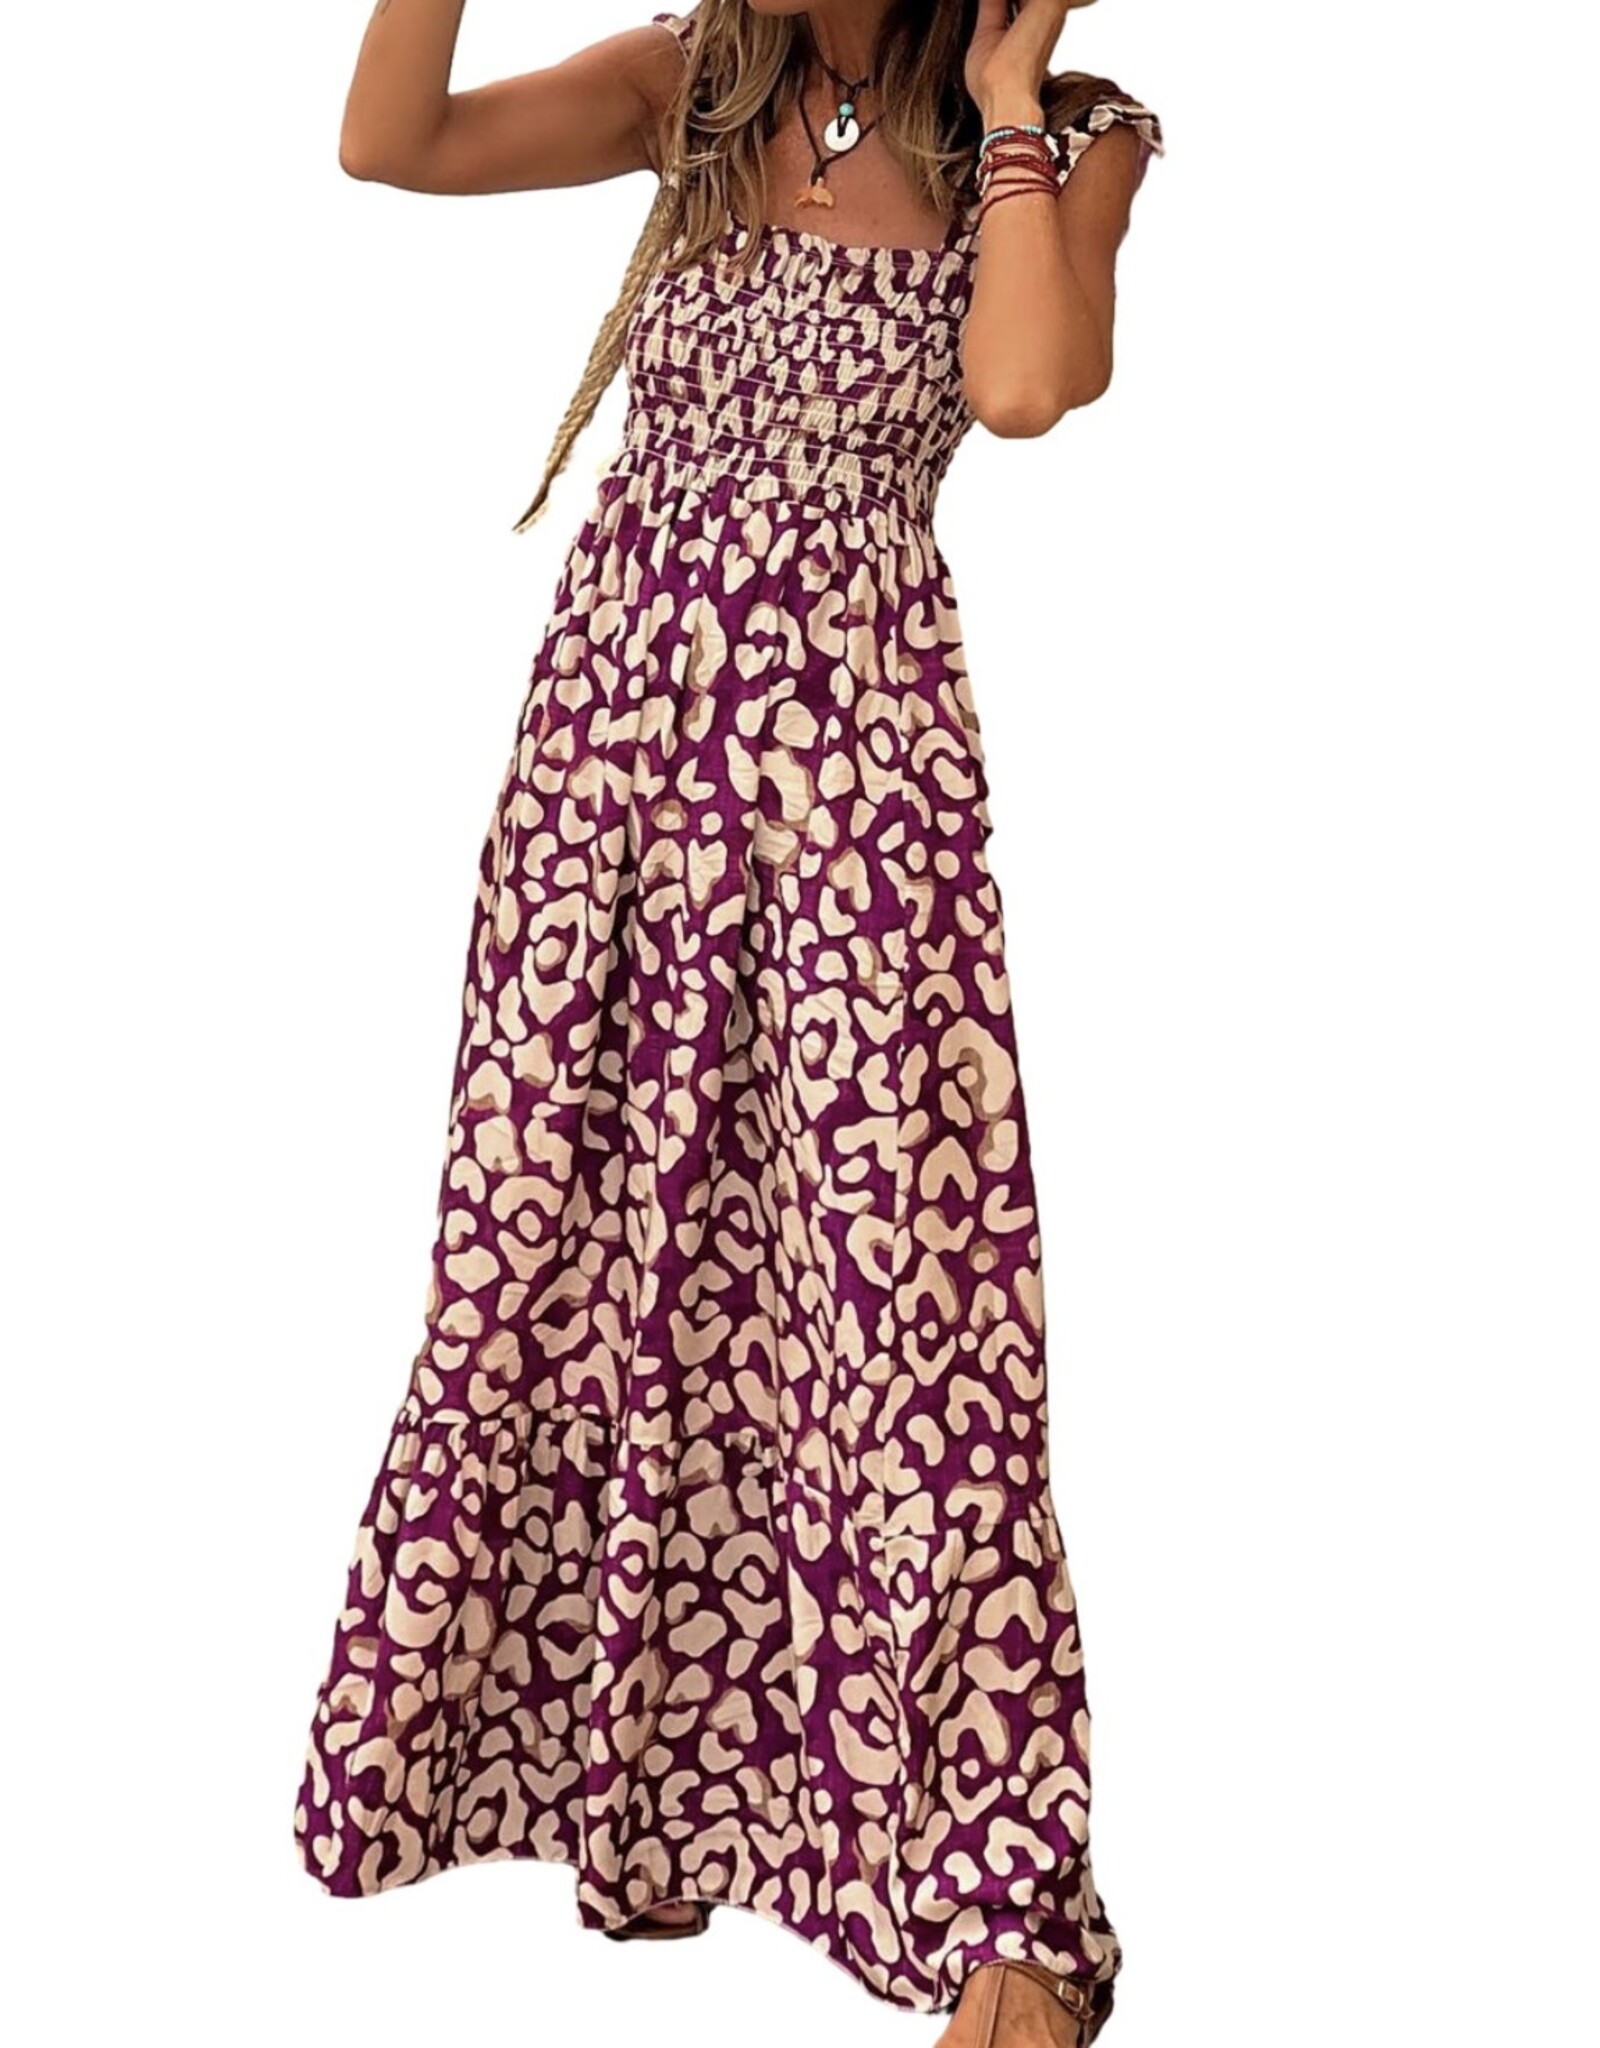 LATA Rose Leopard Smocked Dress